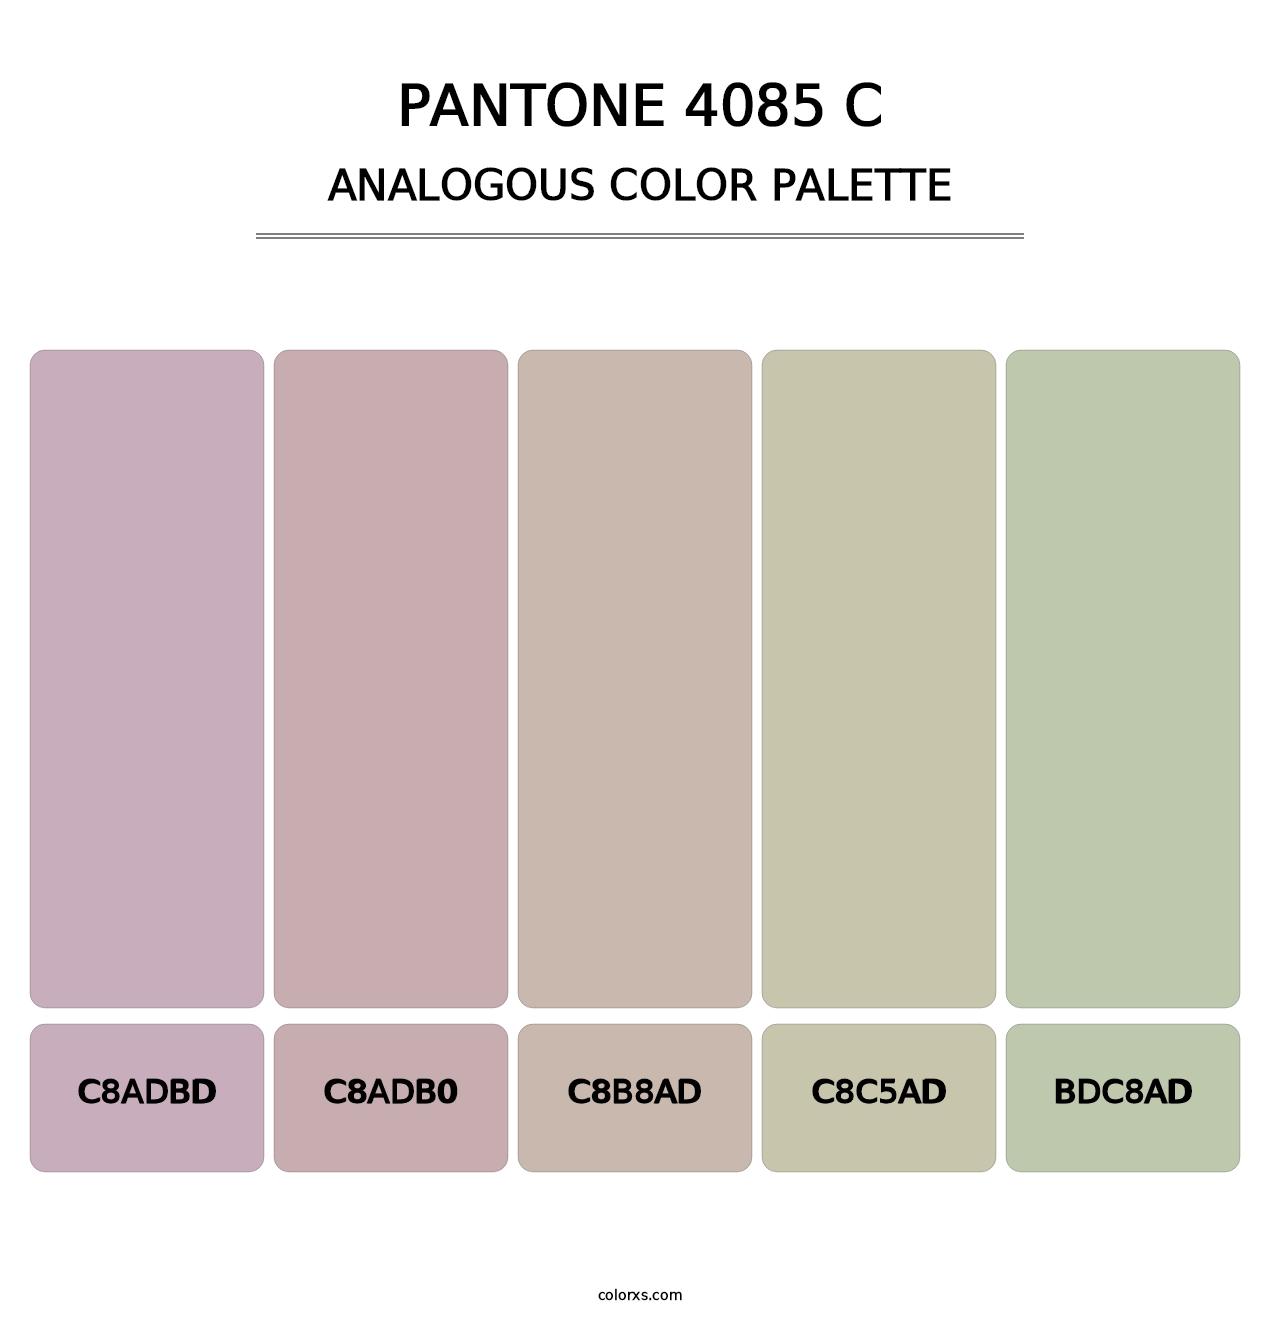 PANTONE 4085 C - Analogous Color Palette